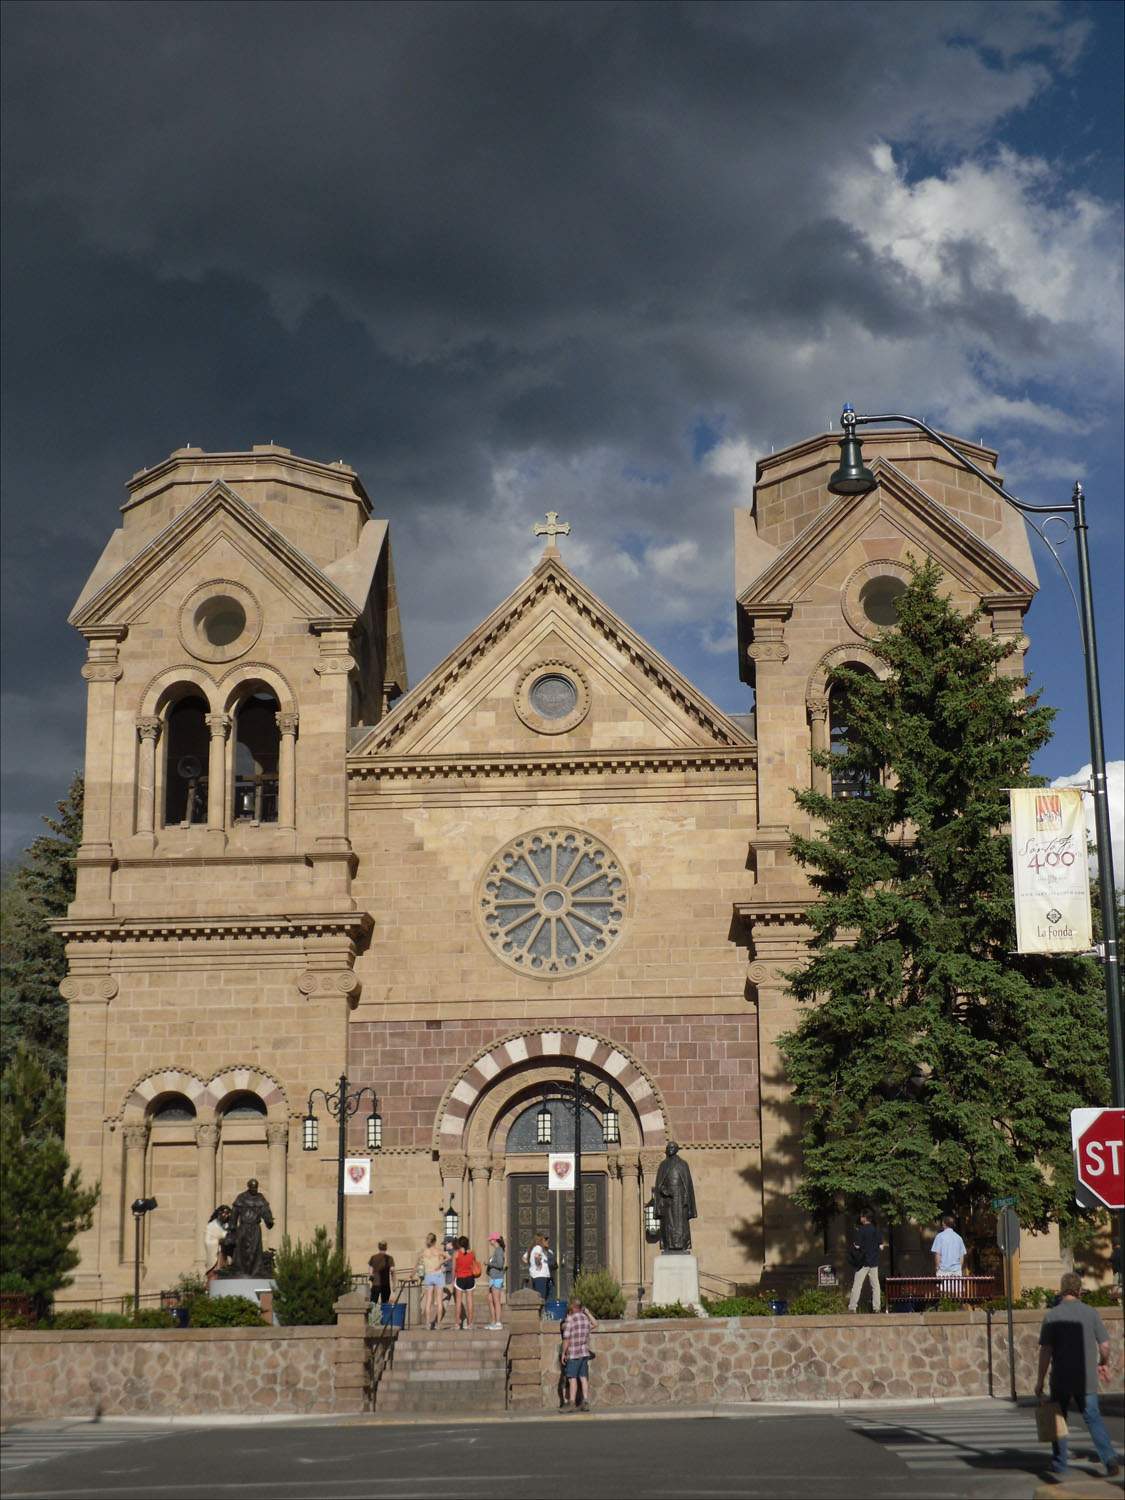 Santa Fe, NM-Catholic church near hotel